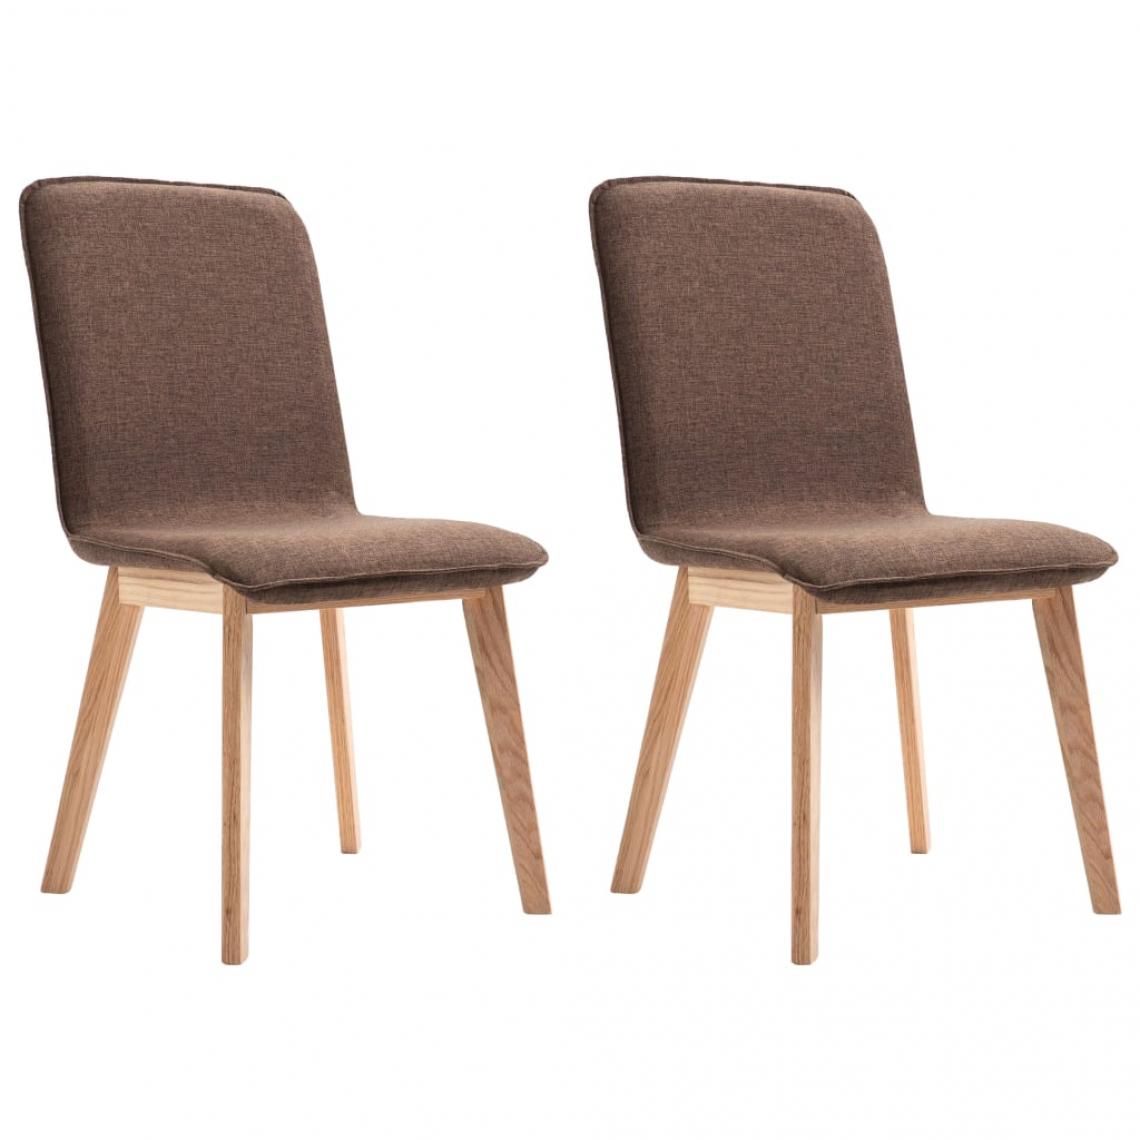 Decoshop26 - Lot de 2 chaises de salle à manger cuisine design moderne tissu marron et chêne massif CDS020780 - Chaises